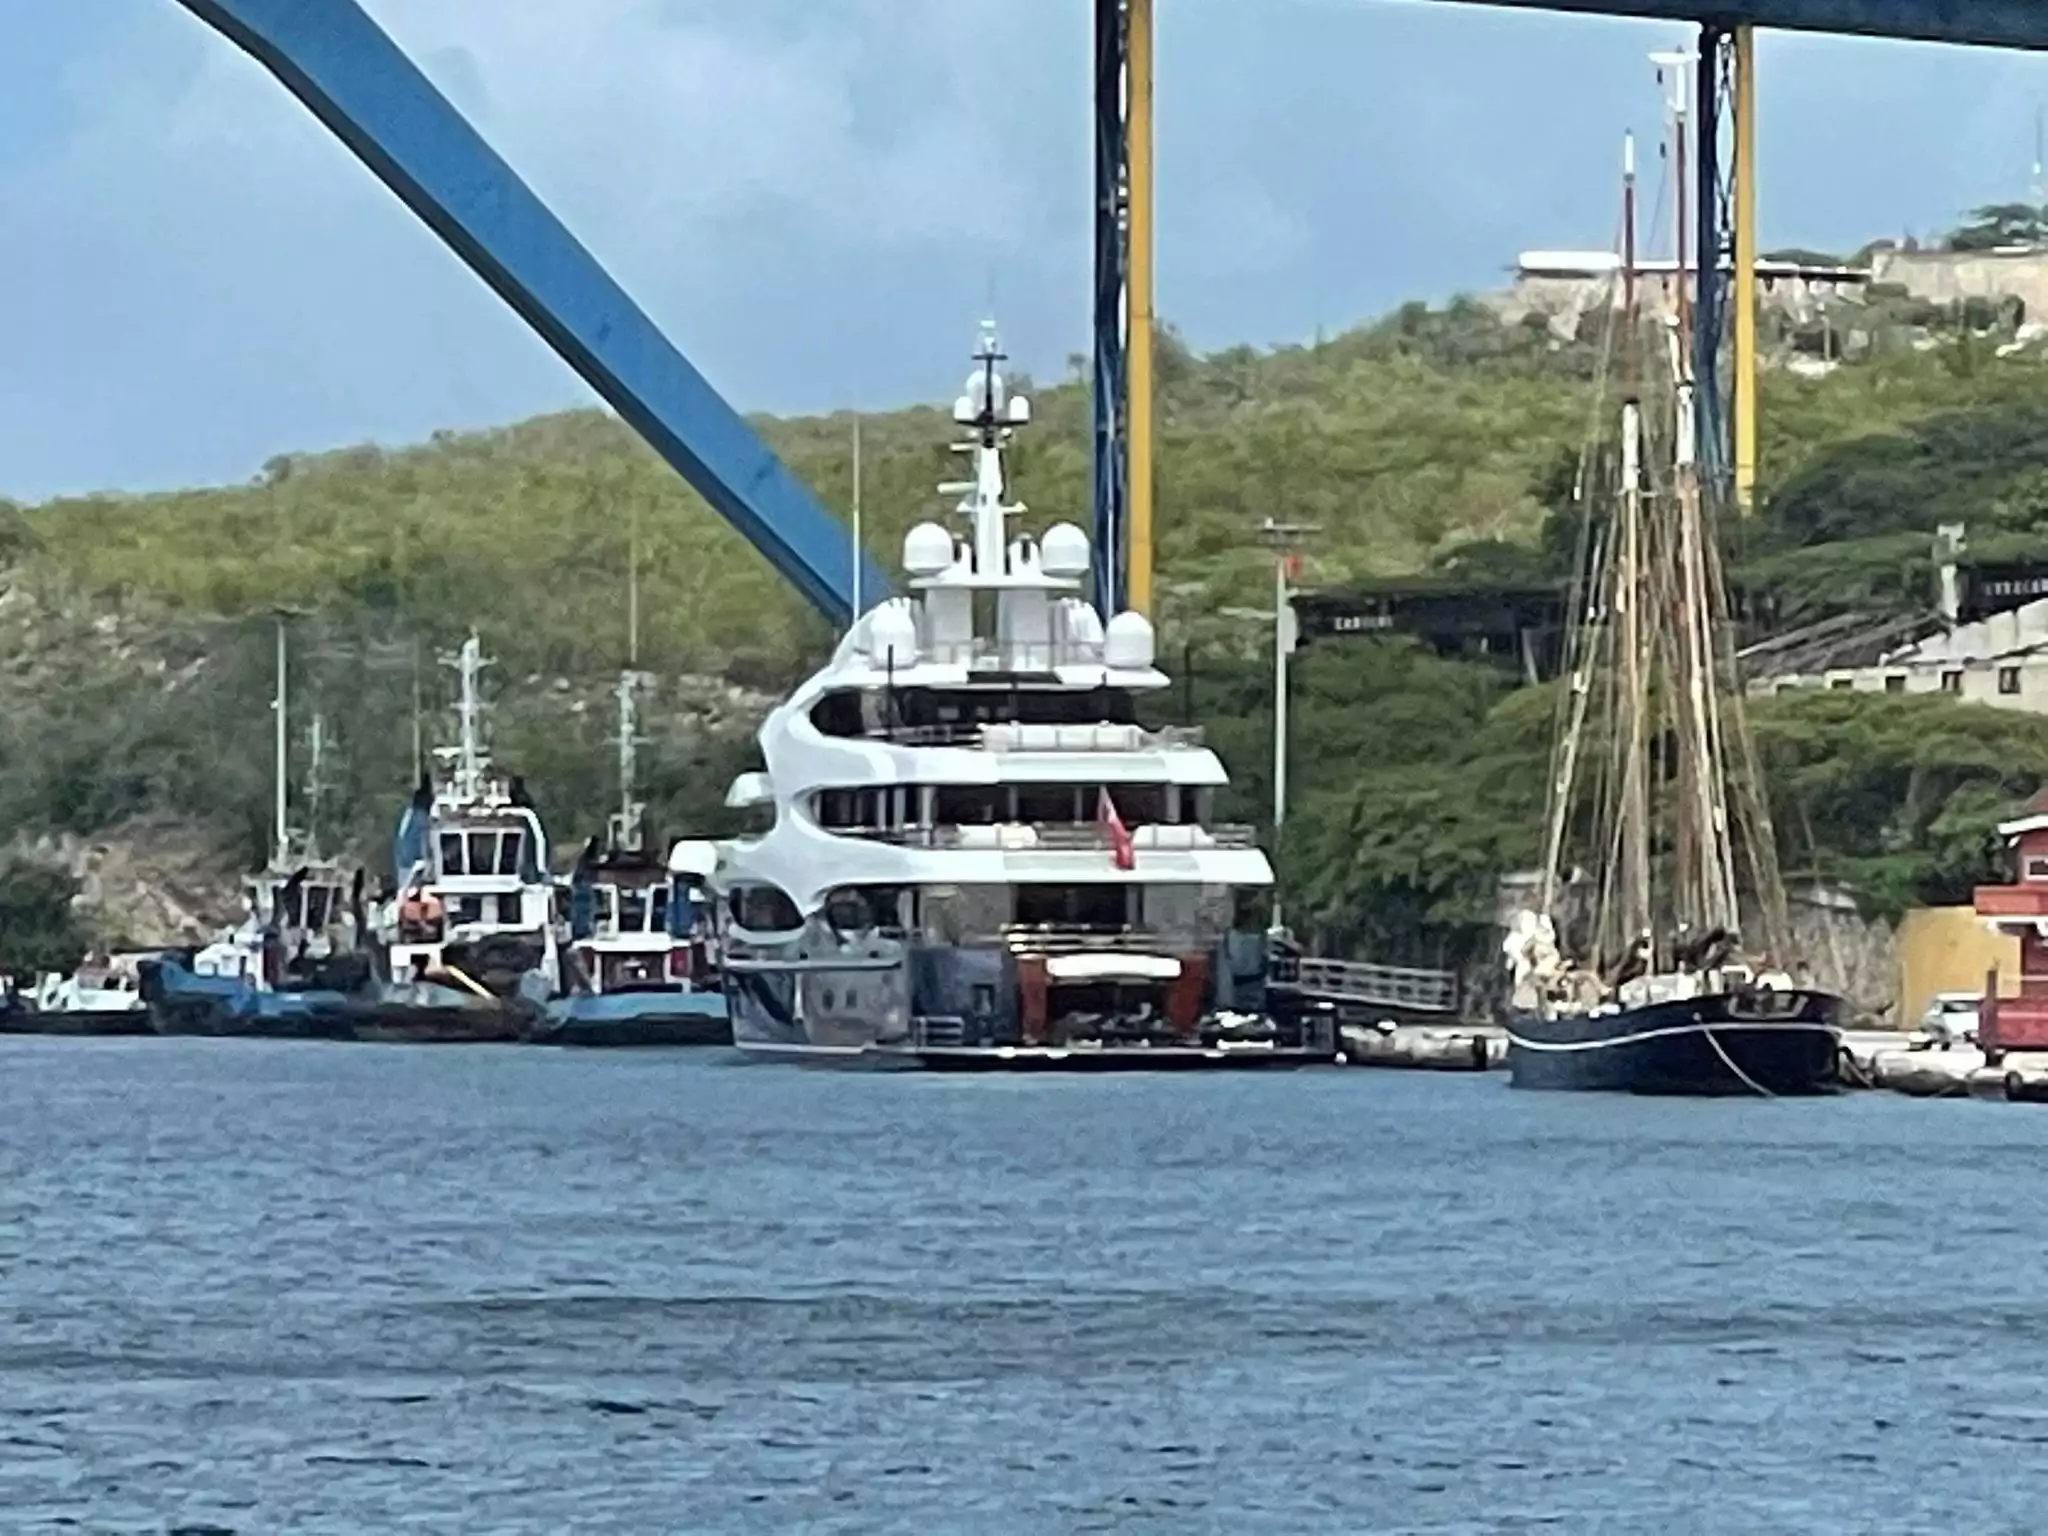 Het Oceanco-jacht Barbara in Willemstad Curaçao